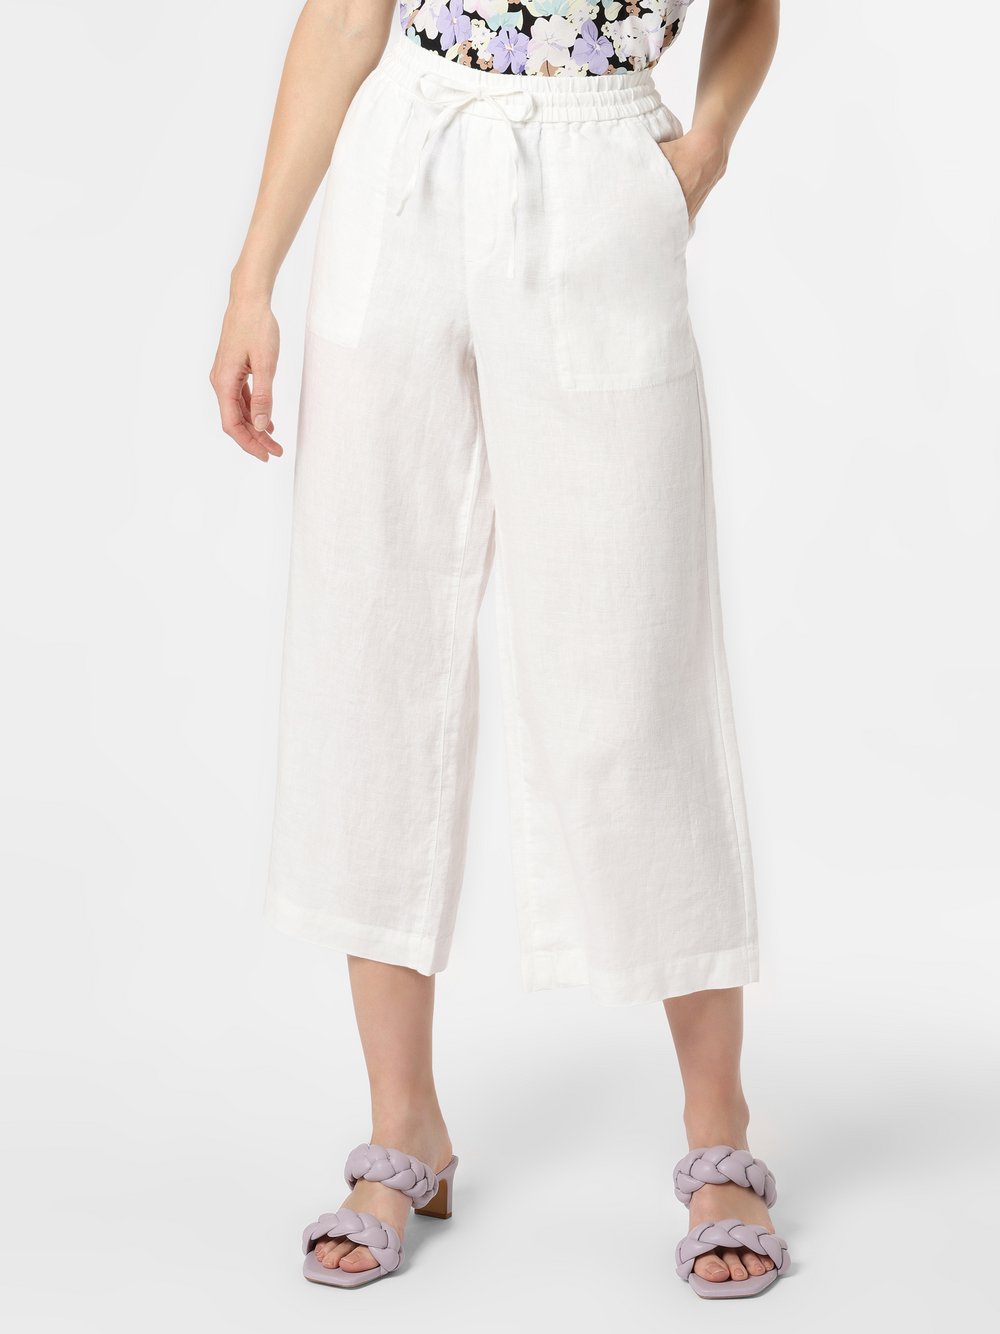 Comma casual identity - Damskie spodnie lniane, biały